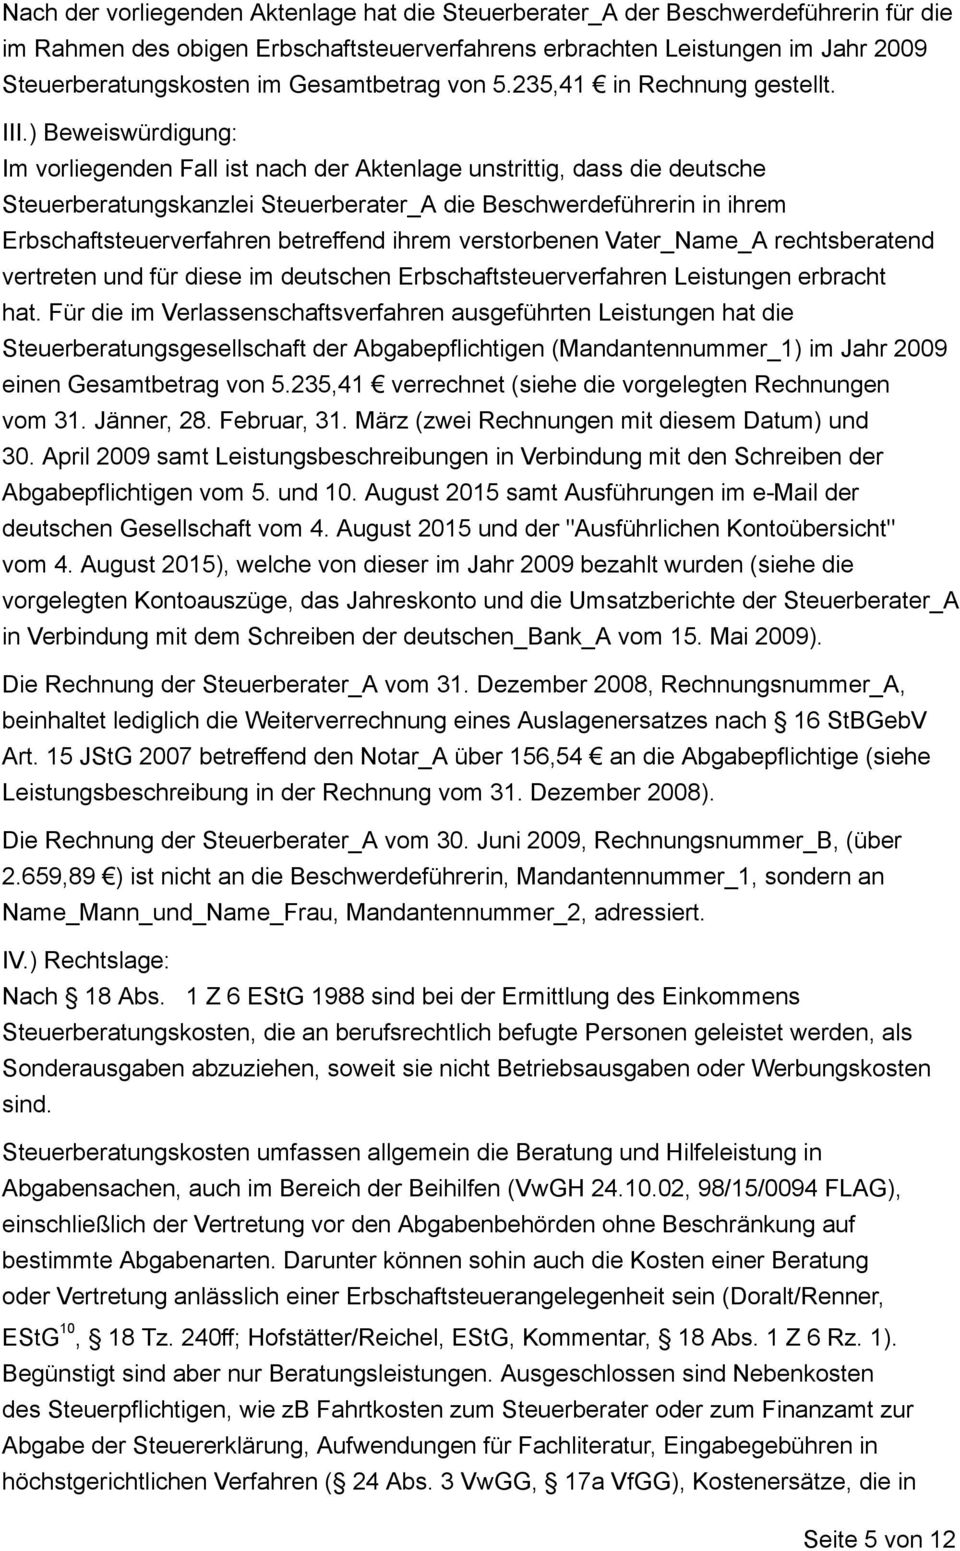 ) Beweiswürdigung: Im vorliegenden Fall ist nach der Aktenlage unstrittig, dass die deutsche Steuerberatungskanzlei Steuerberater_A die Beschwerdeführerin in ihrem Erbschaftsteuerverfahren betreffend